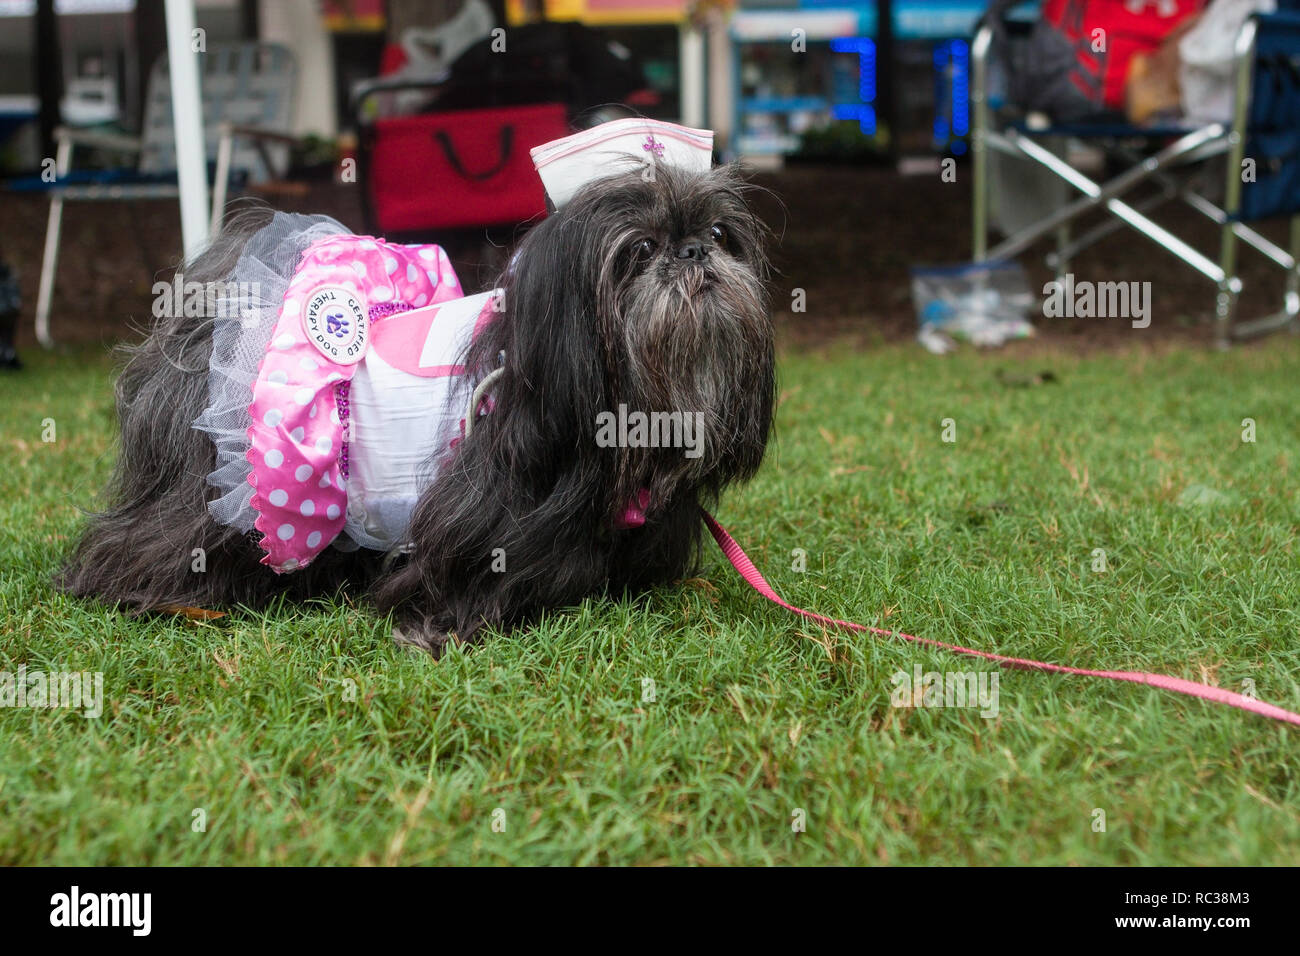 Un shih tzu porte un costume à candy striper Doggy Con, un concours de costume de chien à Woodruff Park le 18 août 2018 à Atlanta, GA. Banque D'Images